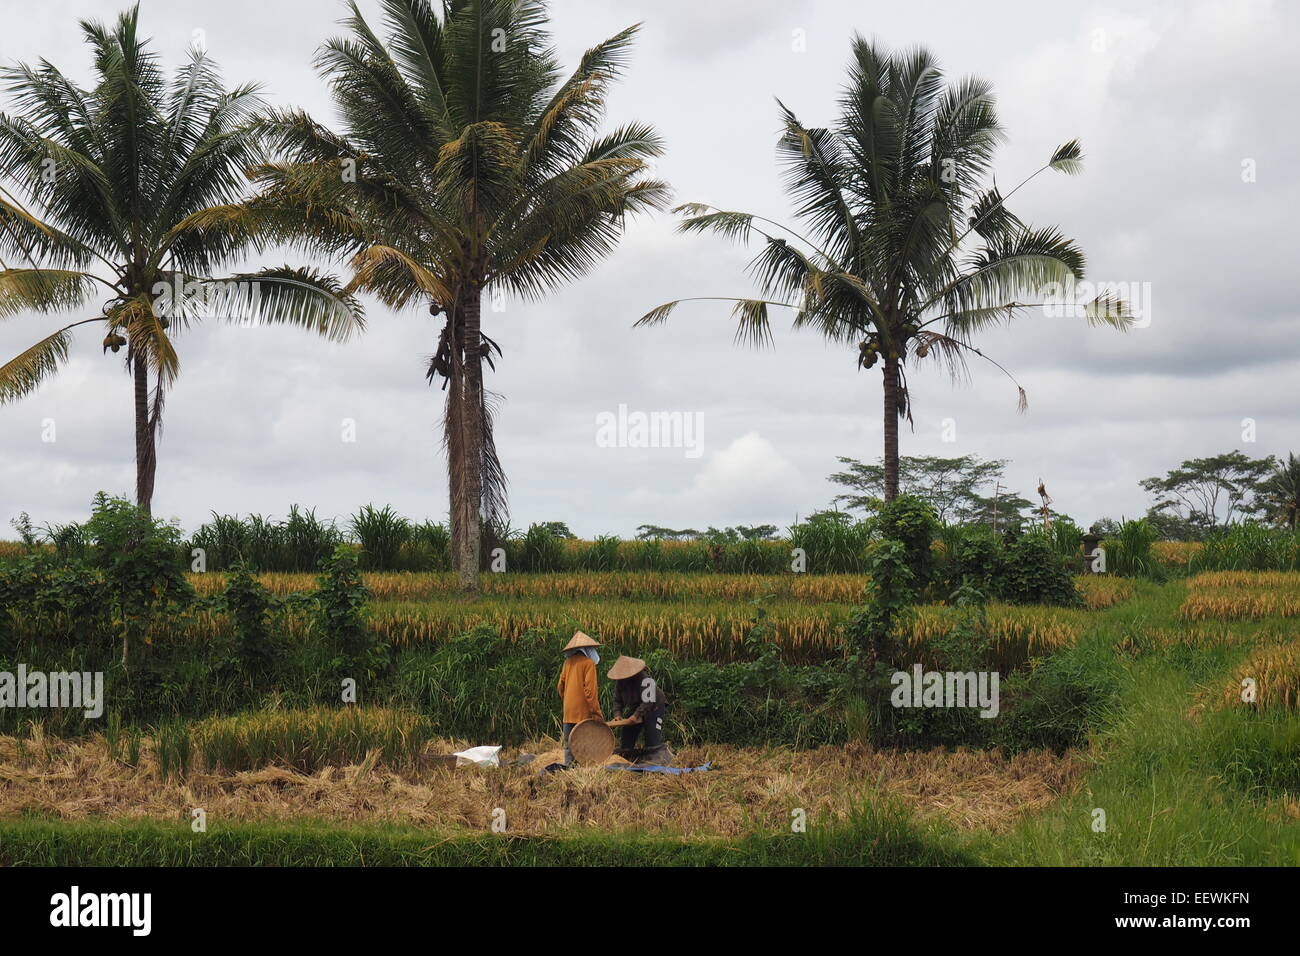 Gli agricoltori Balinese la mietitura del riso in Ubud, Bali. Foto Stock